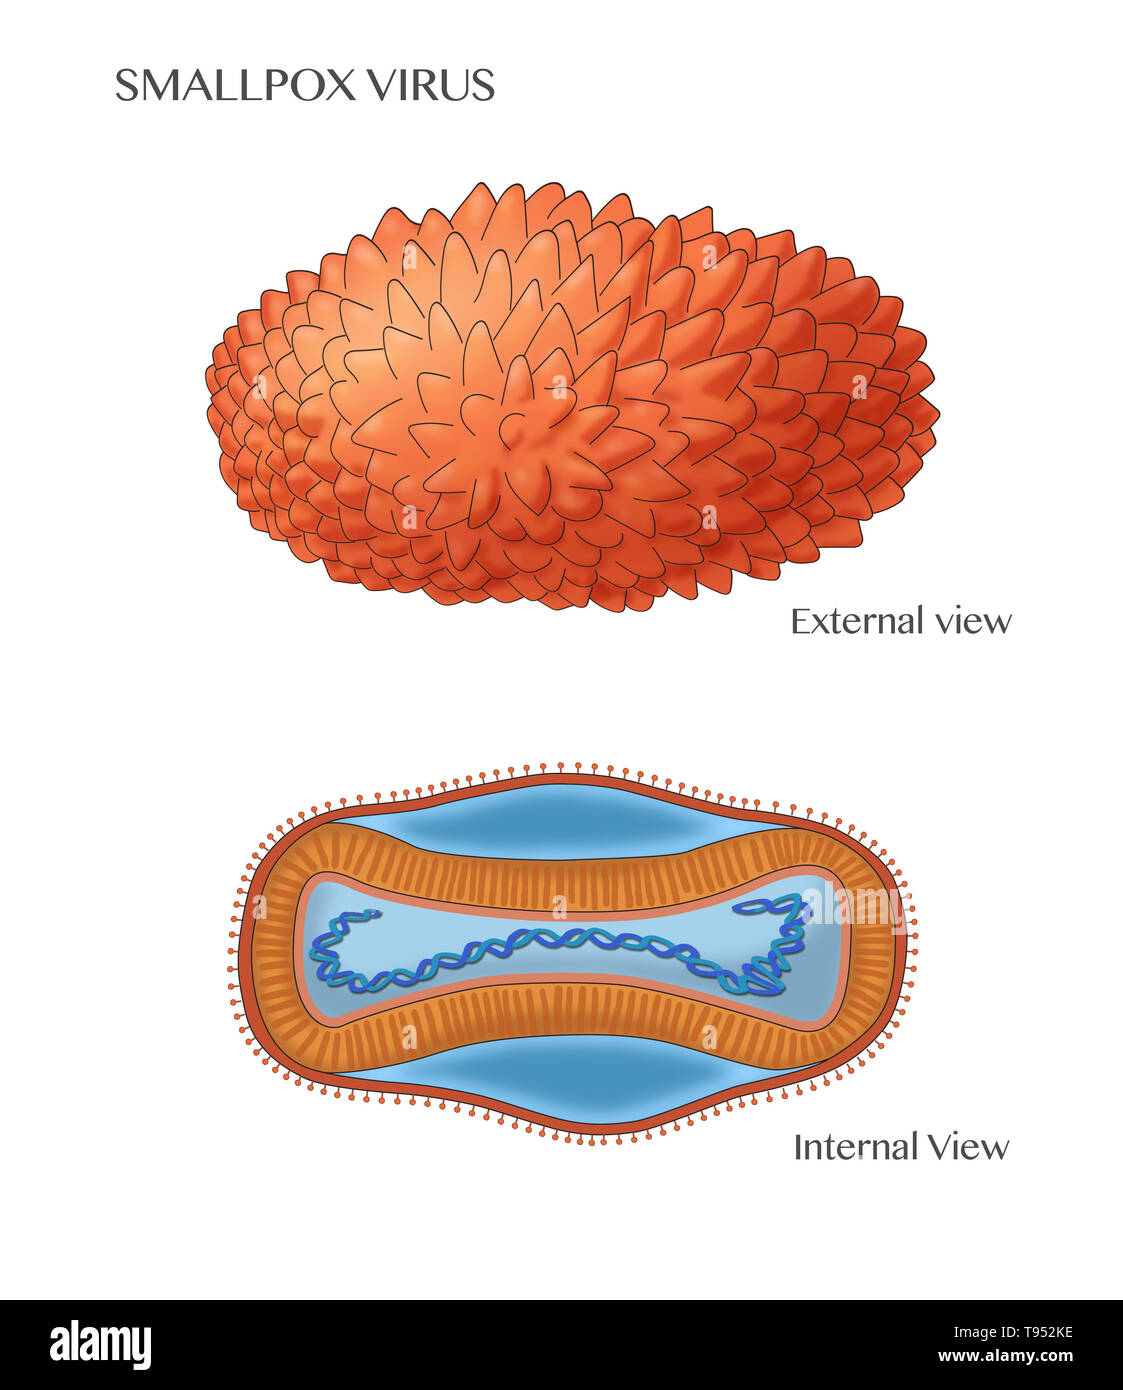 Illustrazione marcato di virus del vaiolo, che mostra una vista esterna (superiore) e la struttura interna (fondo). Foto Stock